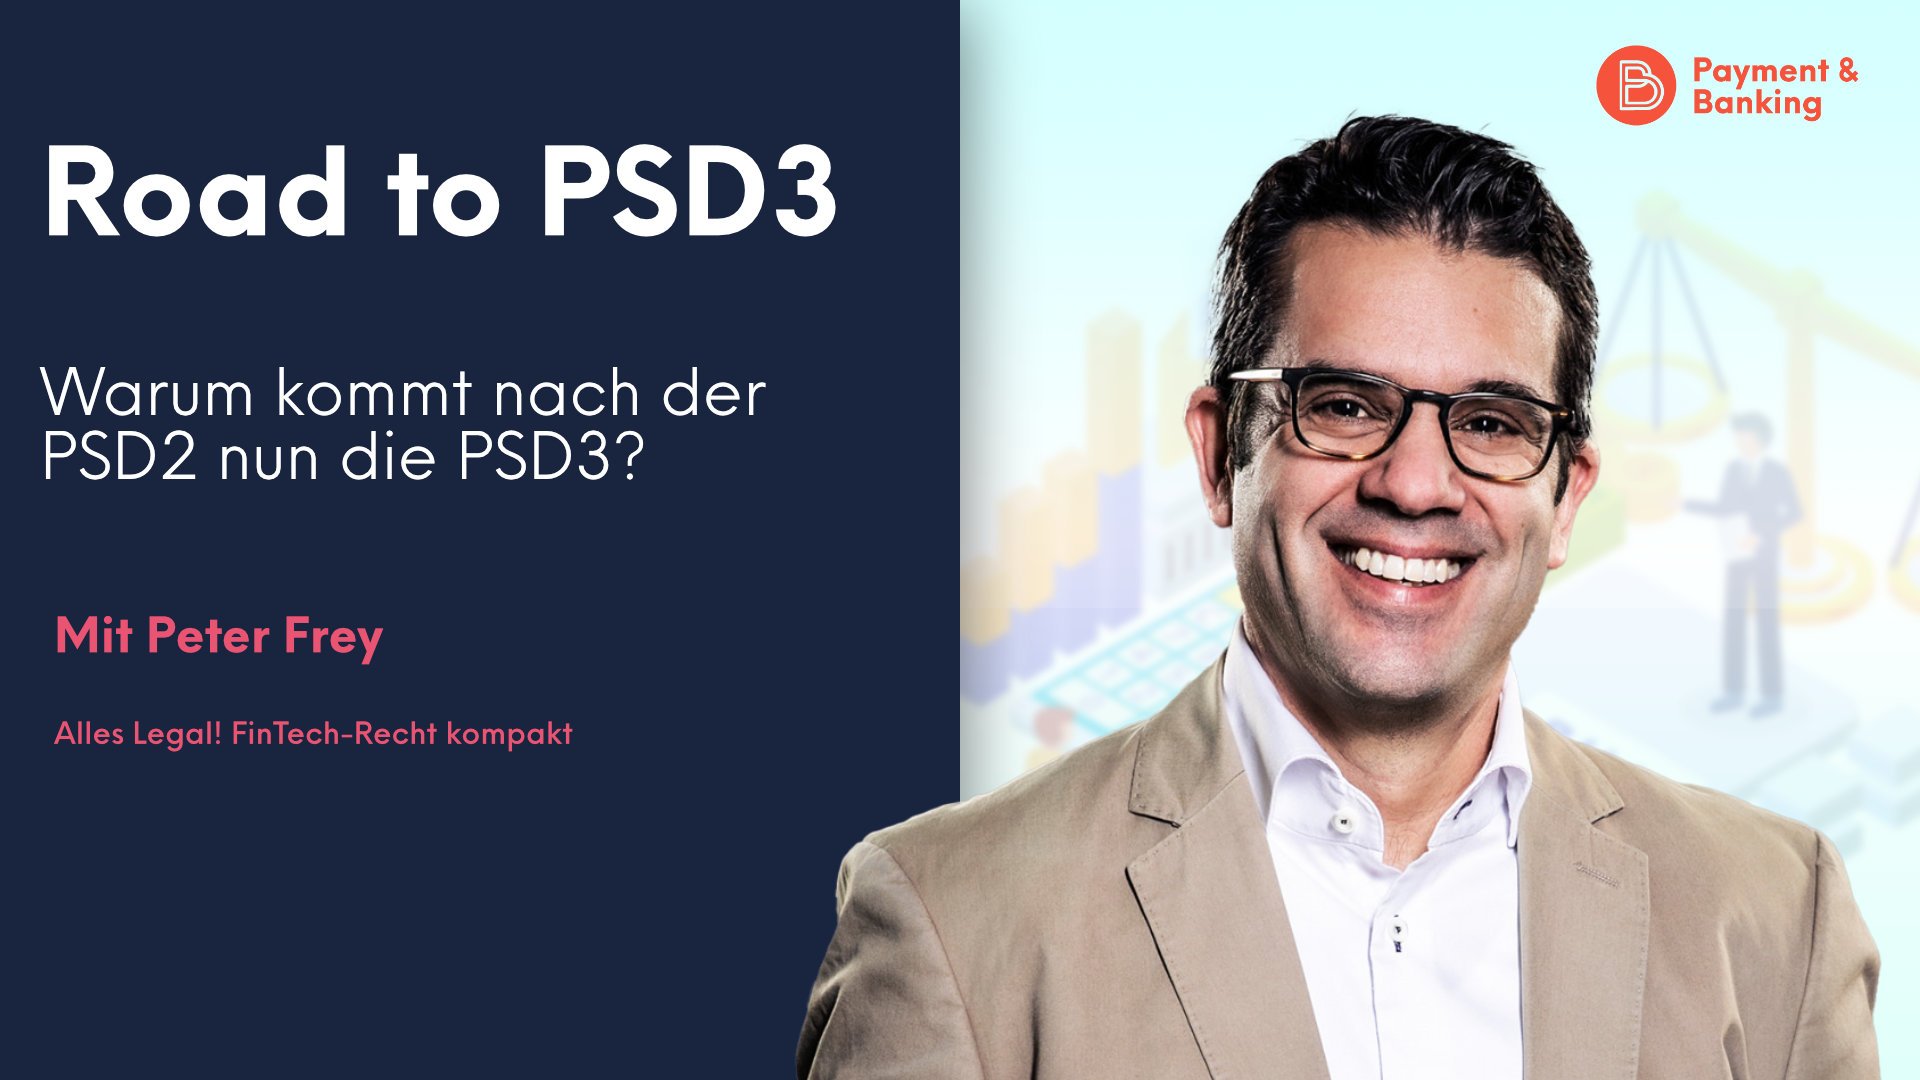 Peter Frey von PayTechLaw klärt auf, warum nach der PSD2 die PSD3 konkrete Formen annimmt und was sie bewirken soll.